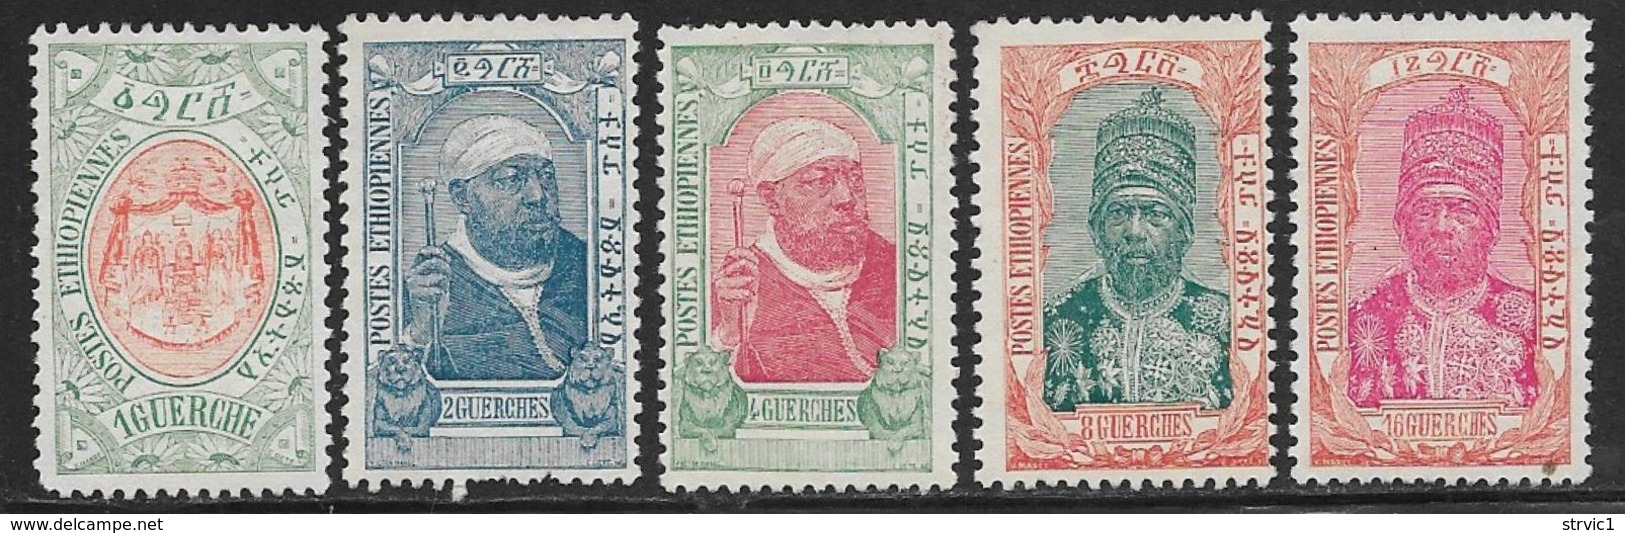 Ethiopia Scott # 89-93 Unused No Gum Part Set Throne, Menelik, 1909, CV$55.50, #90 Has Some Short Perfs - Ethiopië